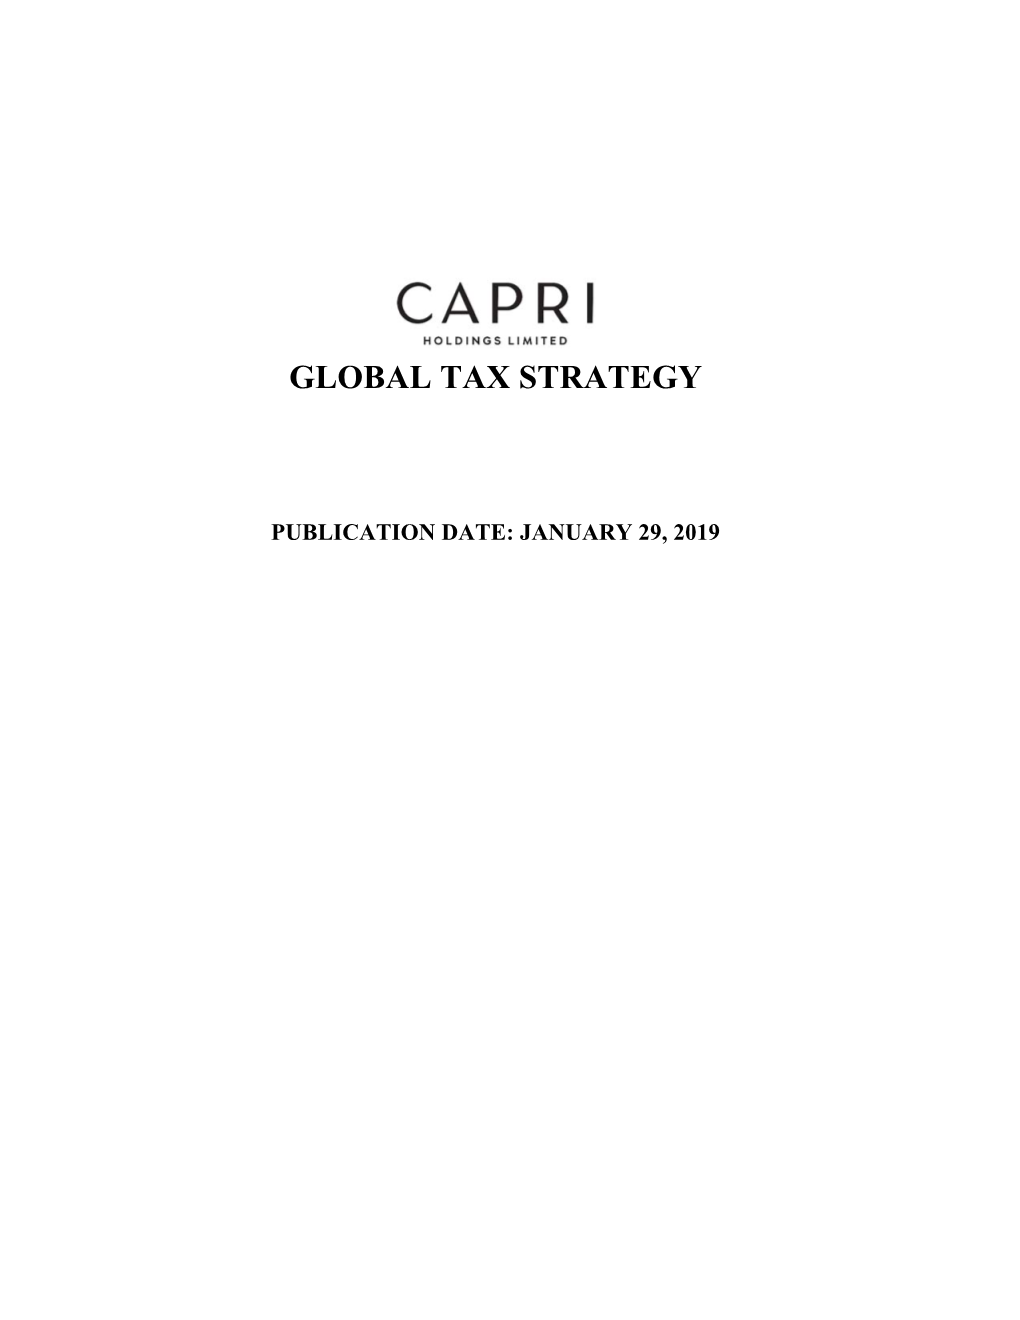 Global Tax Strategy